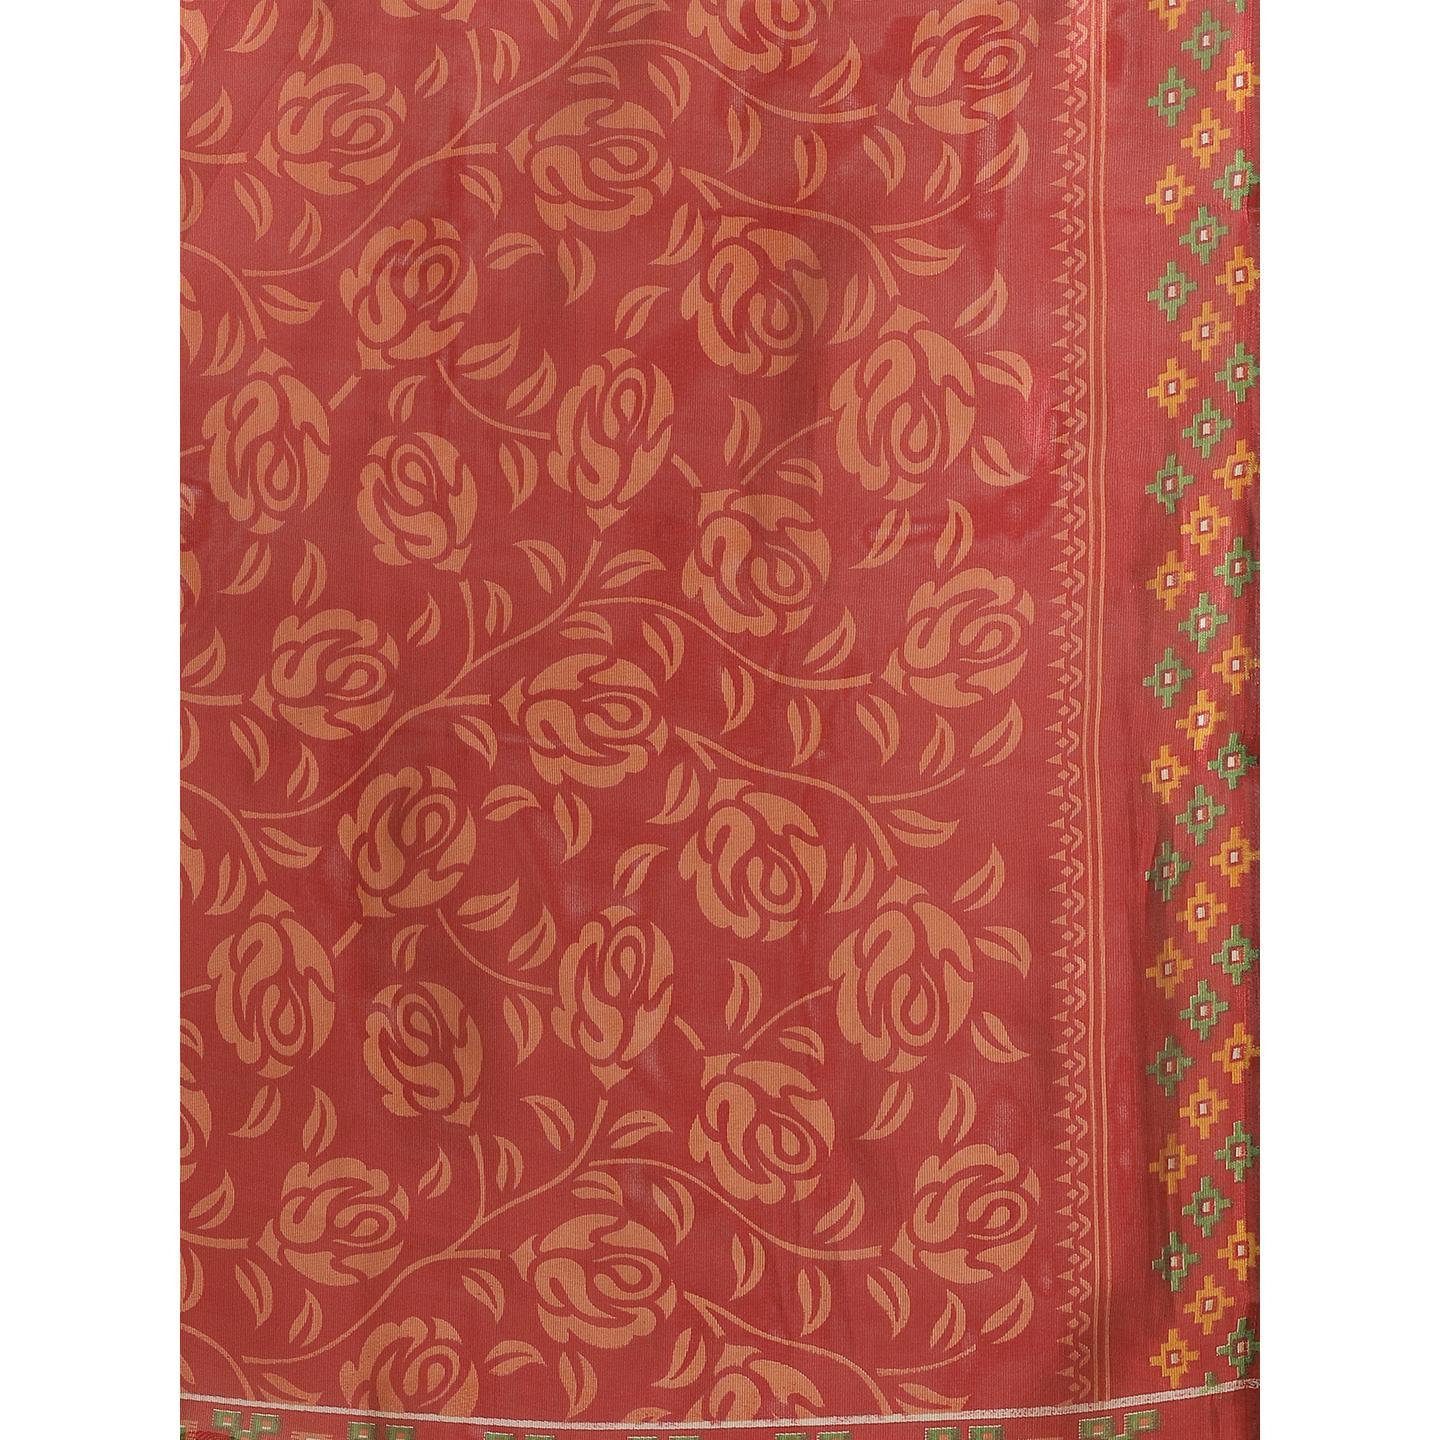 Preferable Red Colored Casual Wear Printed Lichi Silk Saree - Peachmode